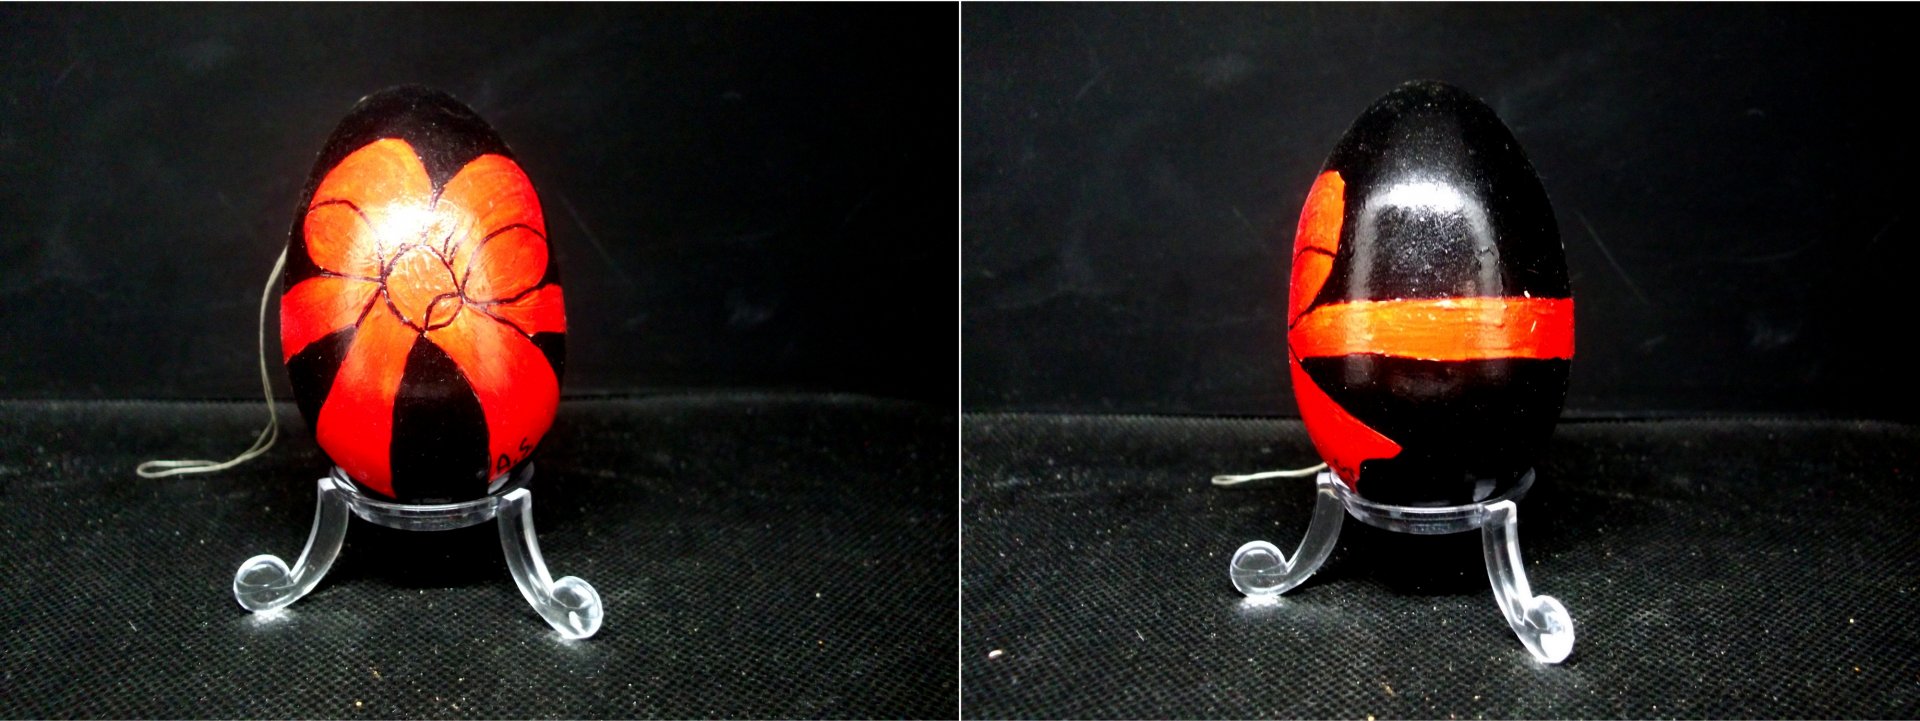 schwarz grundiertes Ei mit roter Schleife 2er Bild klein.JPG